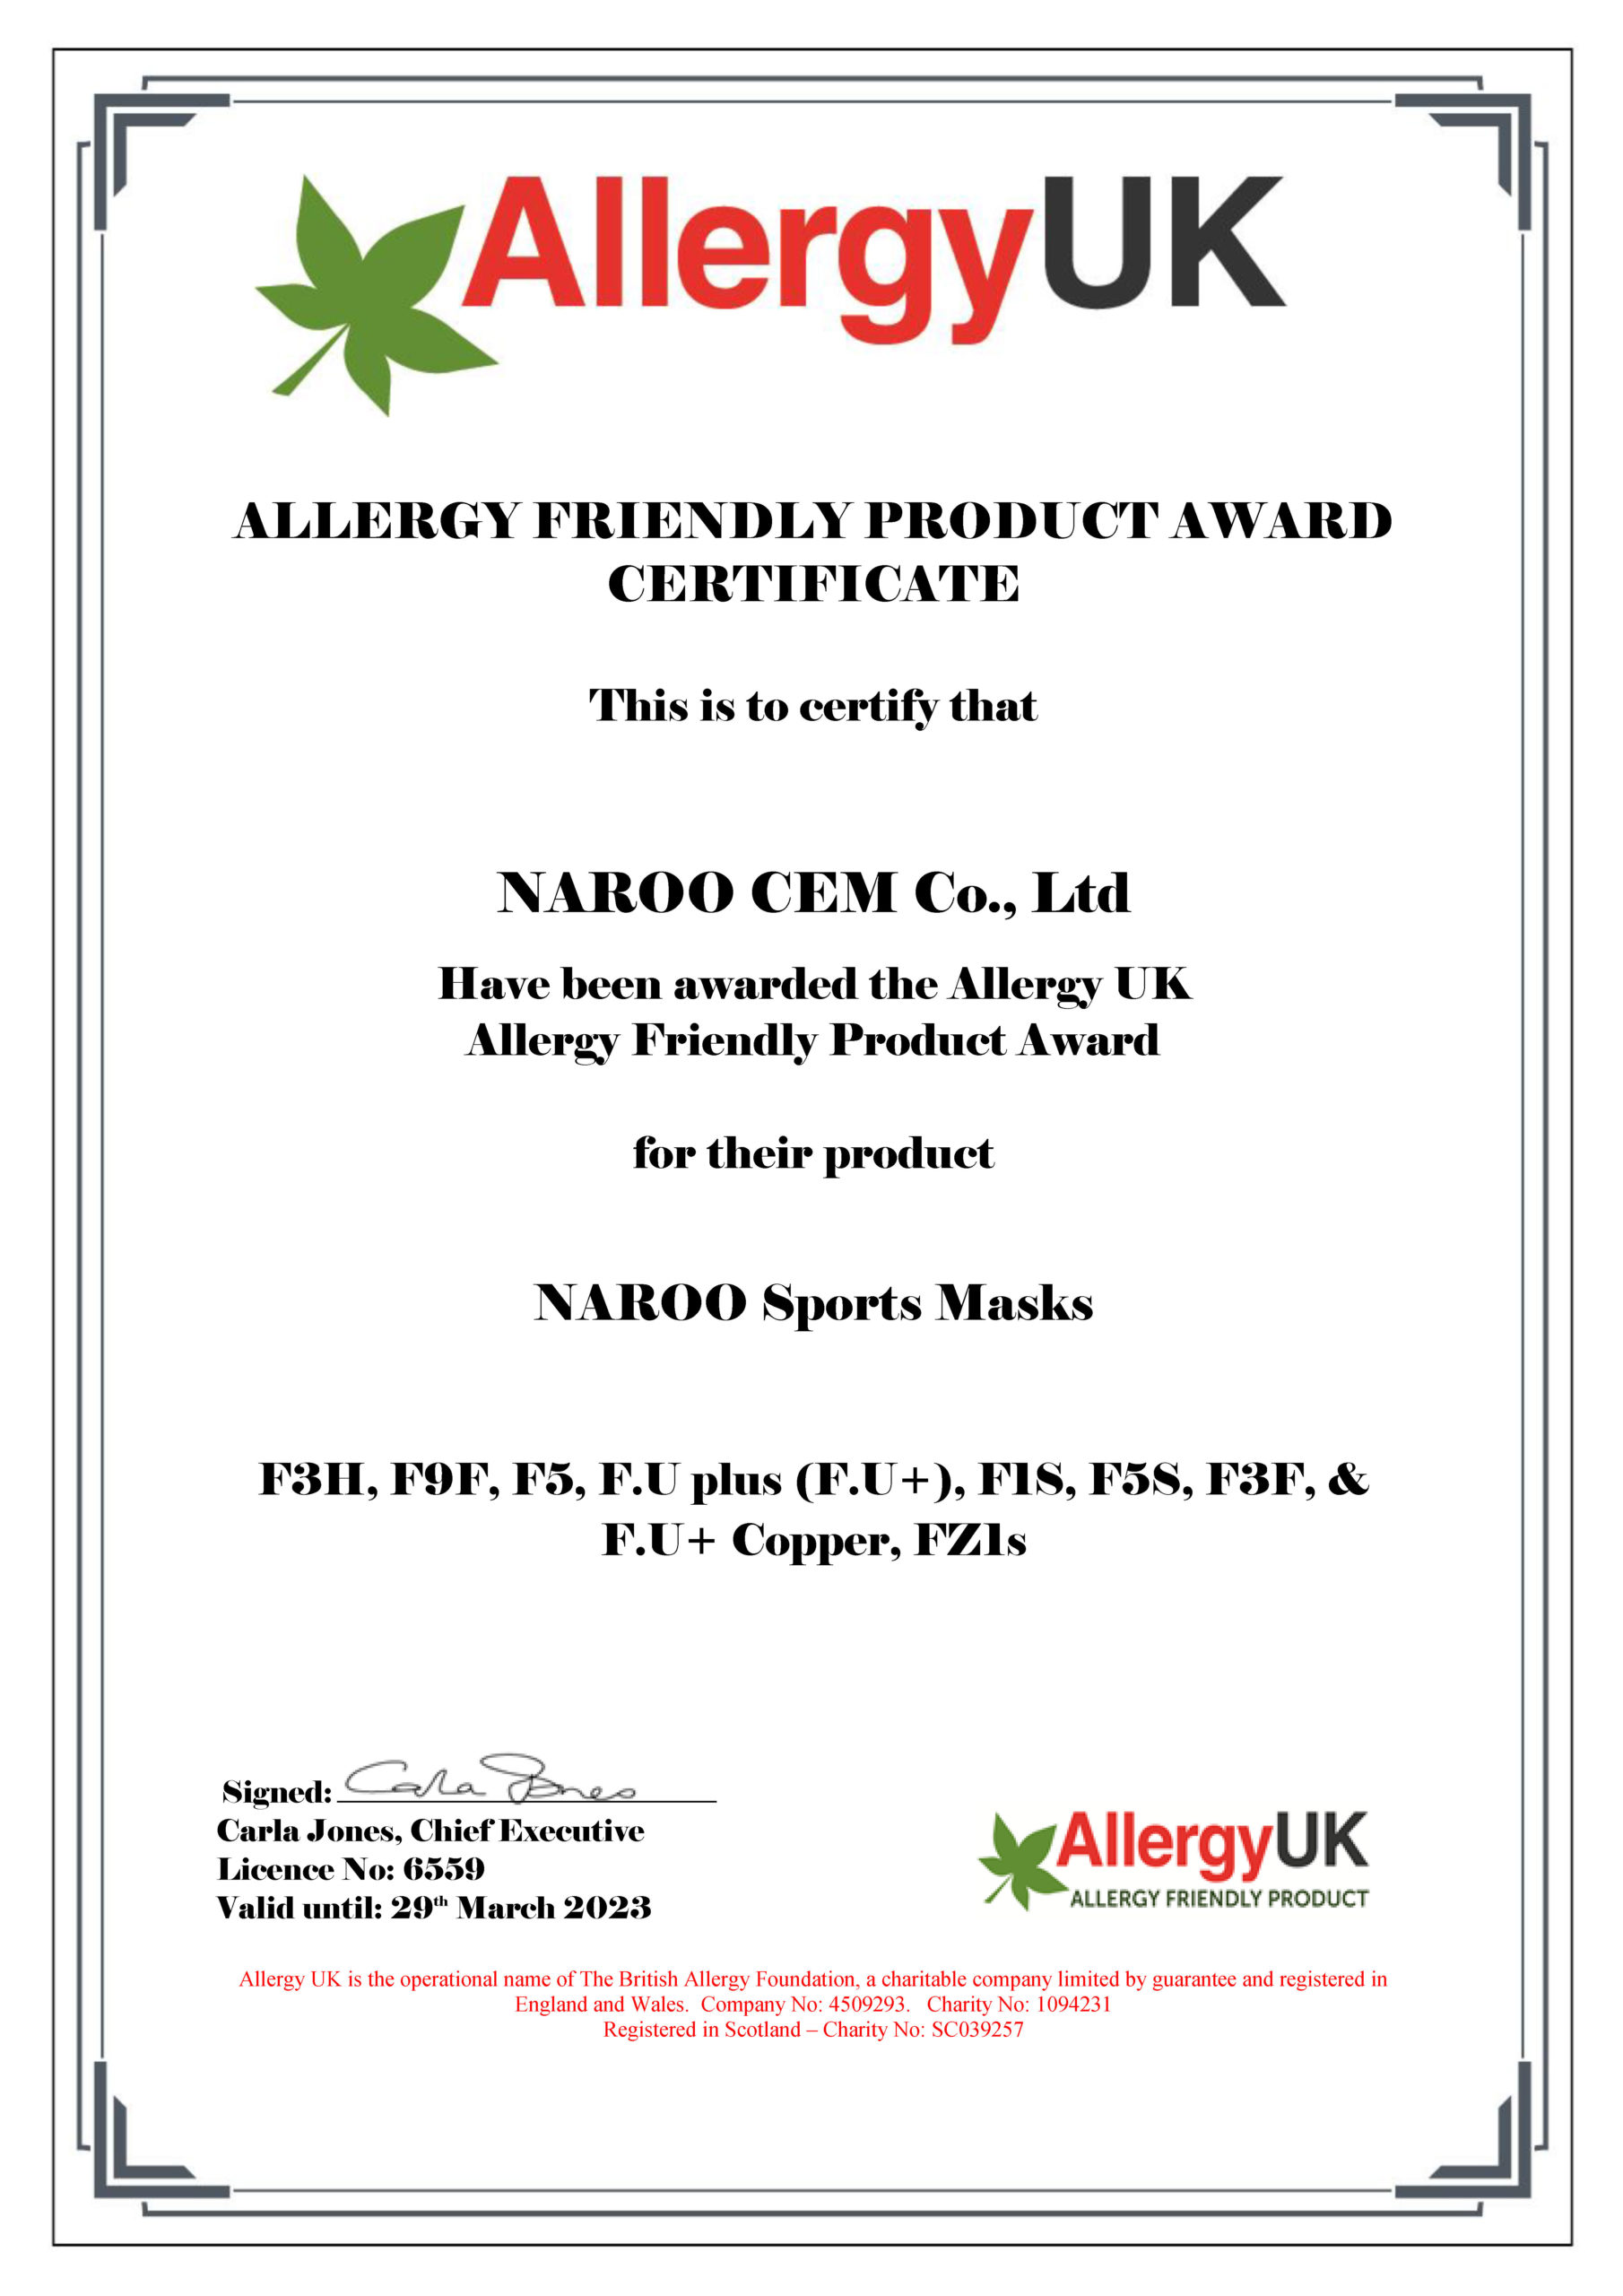 Allergie UK genehmigt NAROO Masken für Allergy Friendly Product Award - 4 Sportmaskenpakete aus der F-Serie NAROO Linie